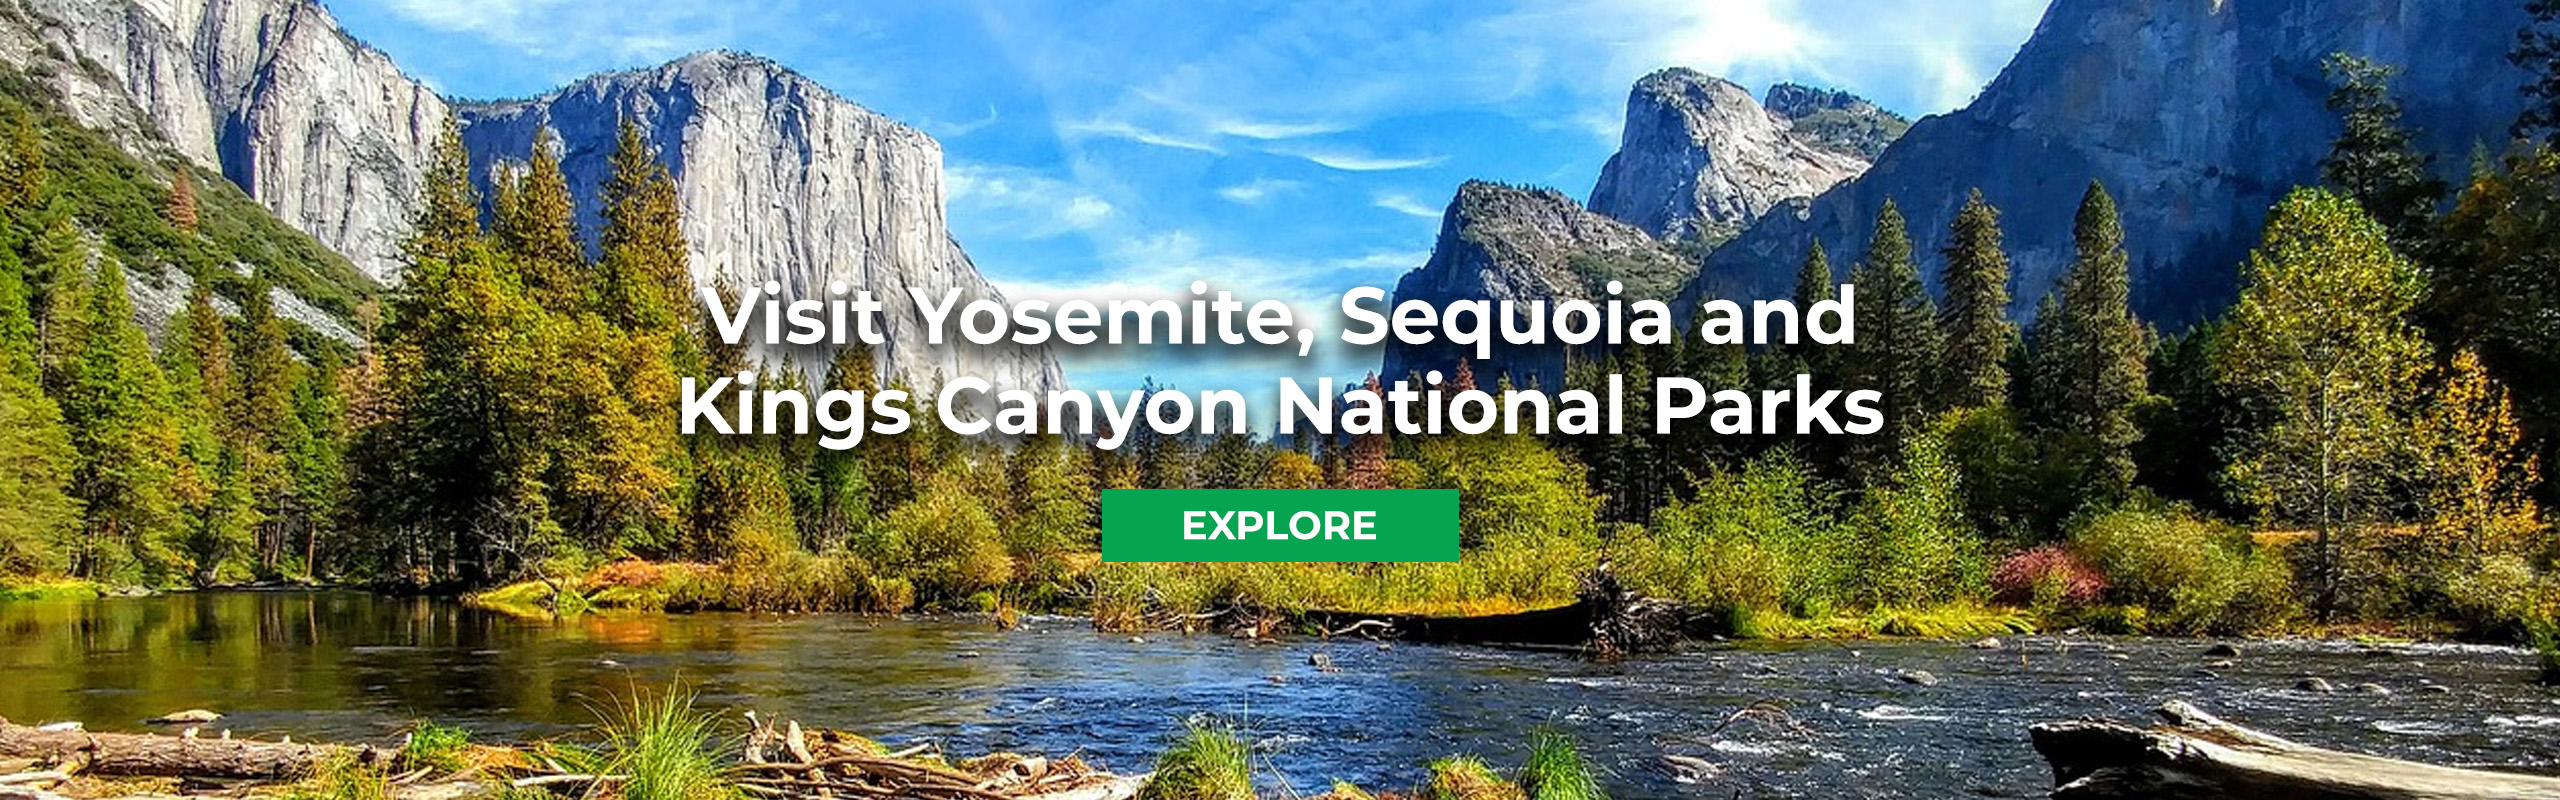 National Parks banner